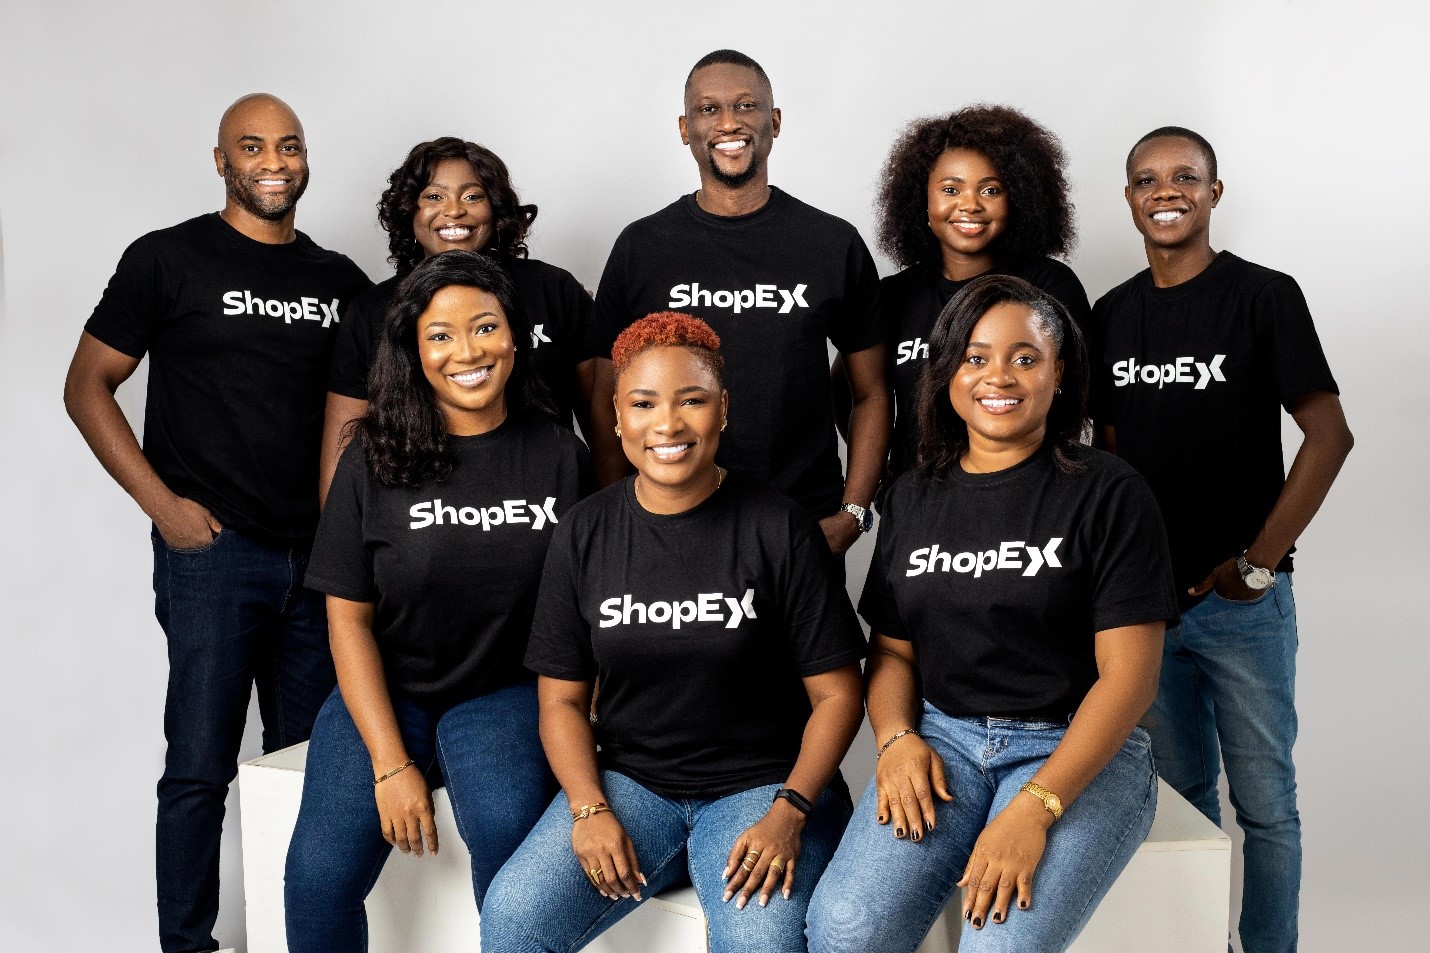 Shopex team